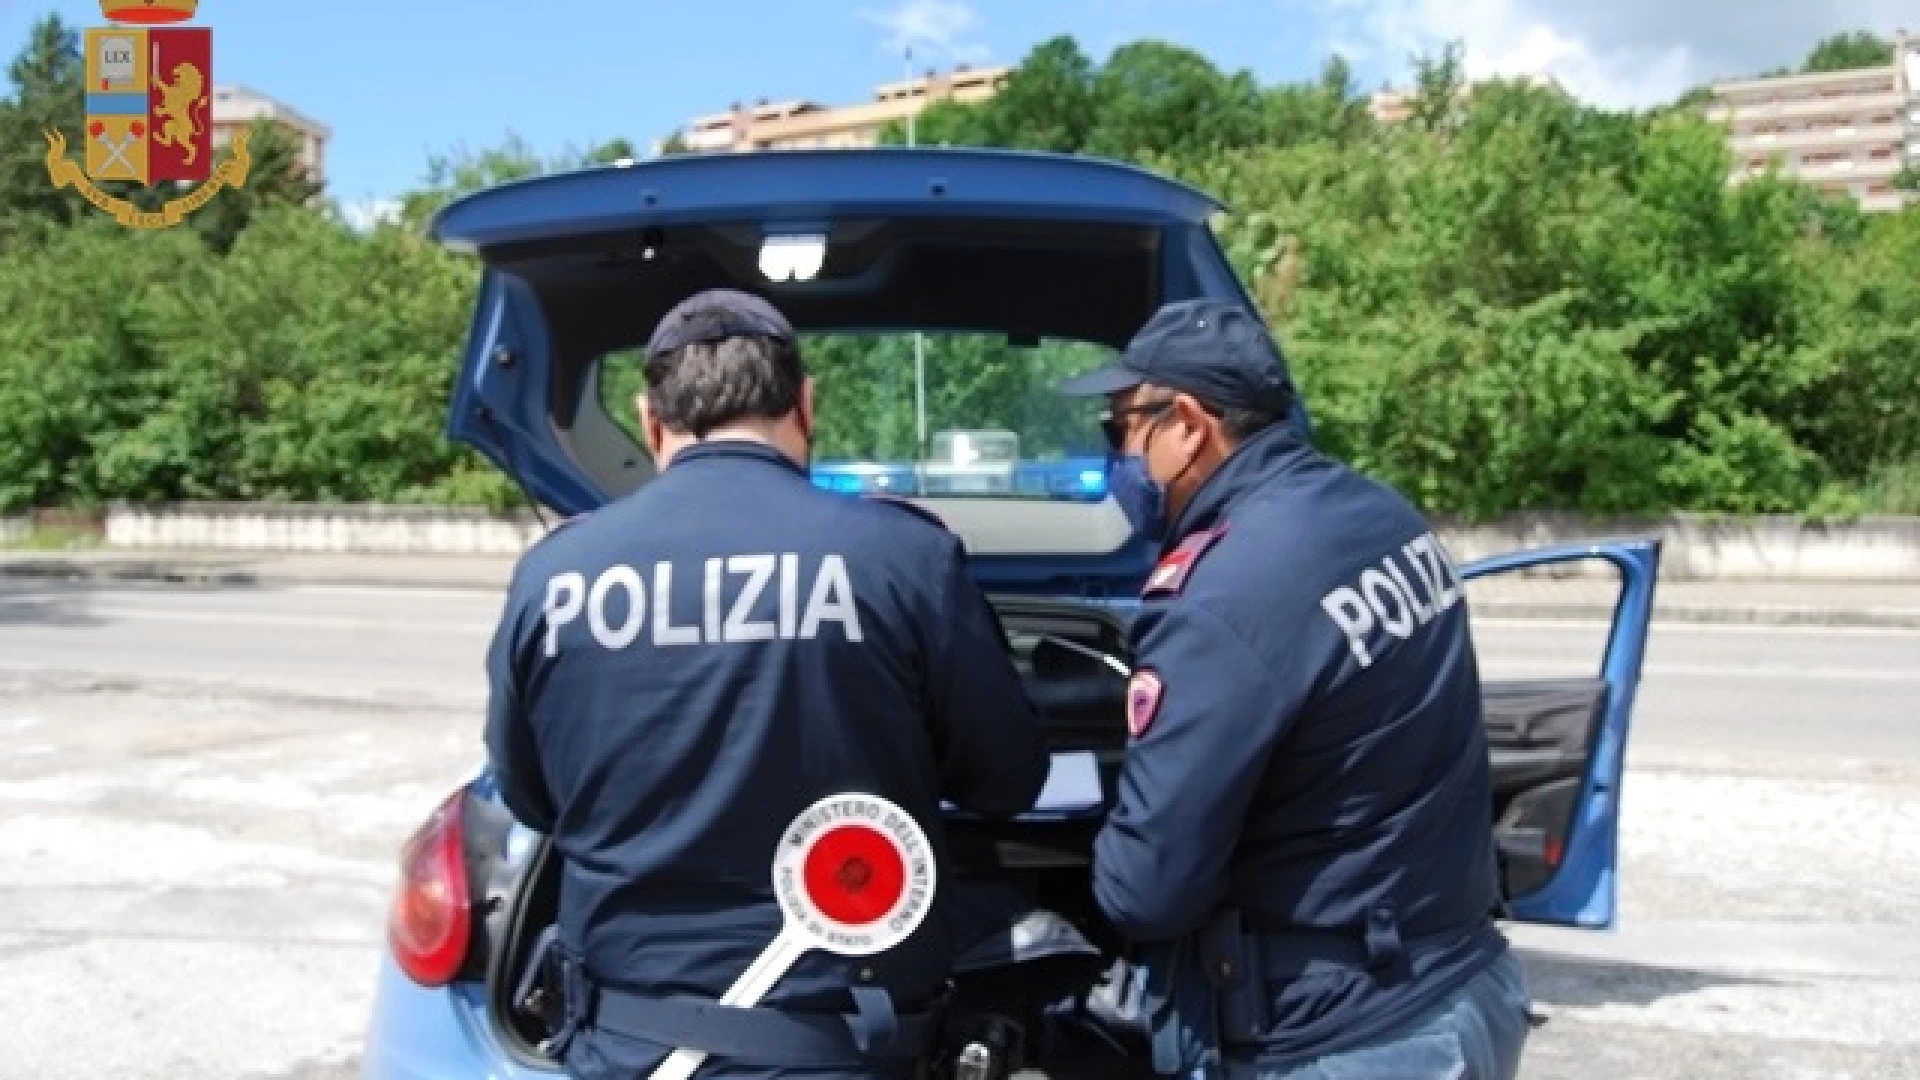 Isernia: la Polizia espelle cittadino straniero dal territorio nazionale.